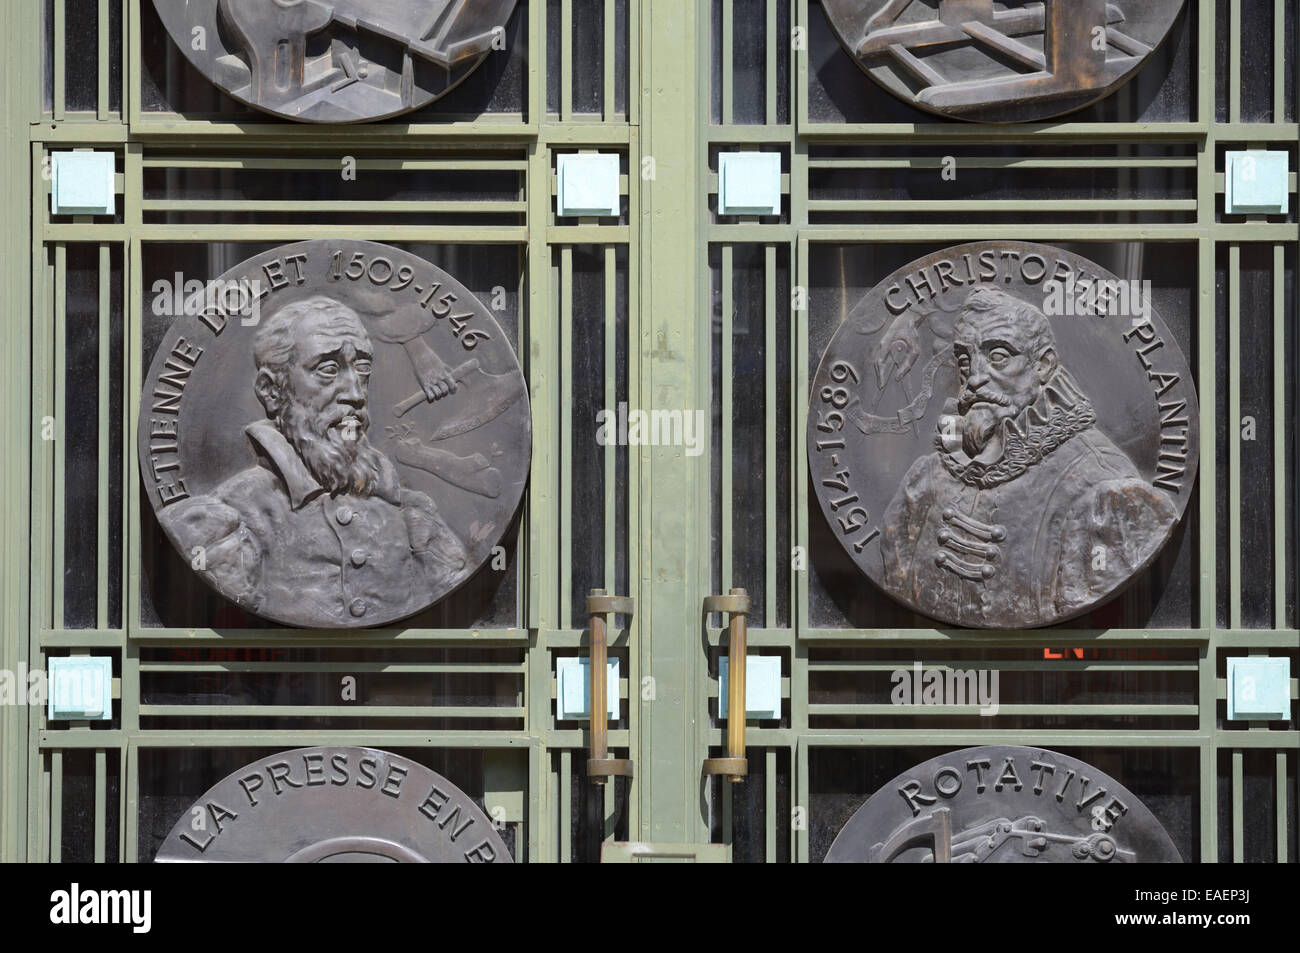 Ritratti di stampanti francese Etienne Dolet (1509-1546) & Christophe Plantin (c1520-1589) 30s Art Deco lamiera della porta alla biblioteca comunale Toulouse Foto Stock